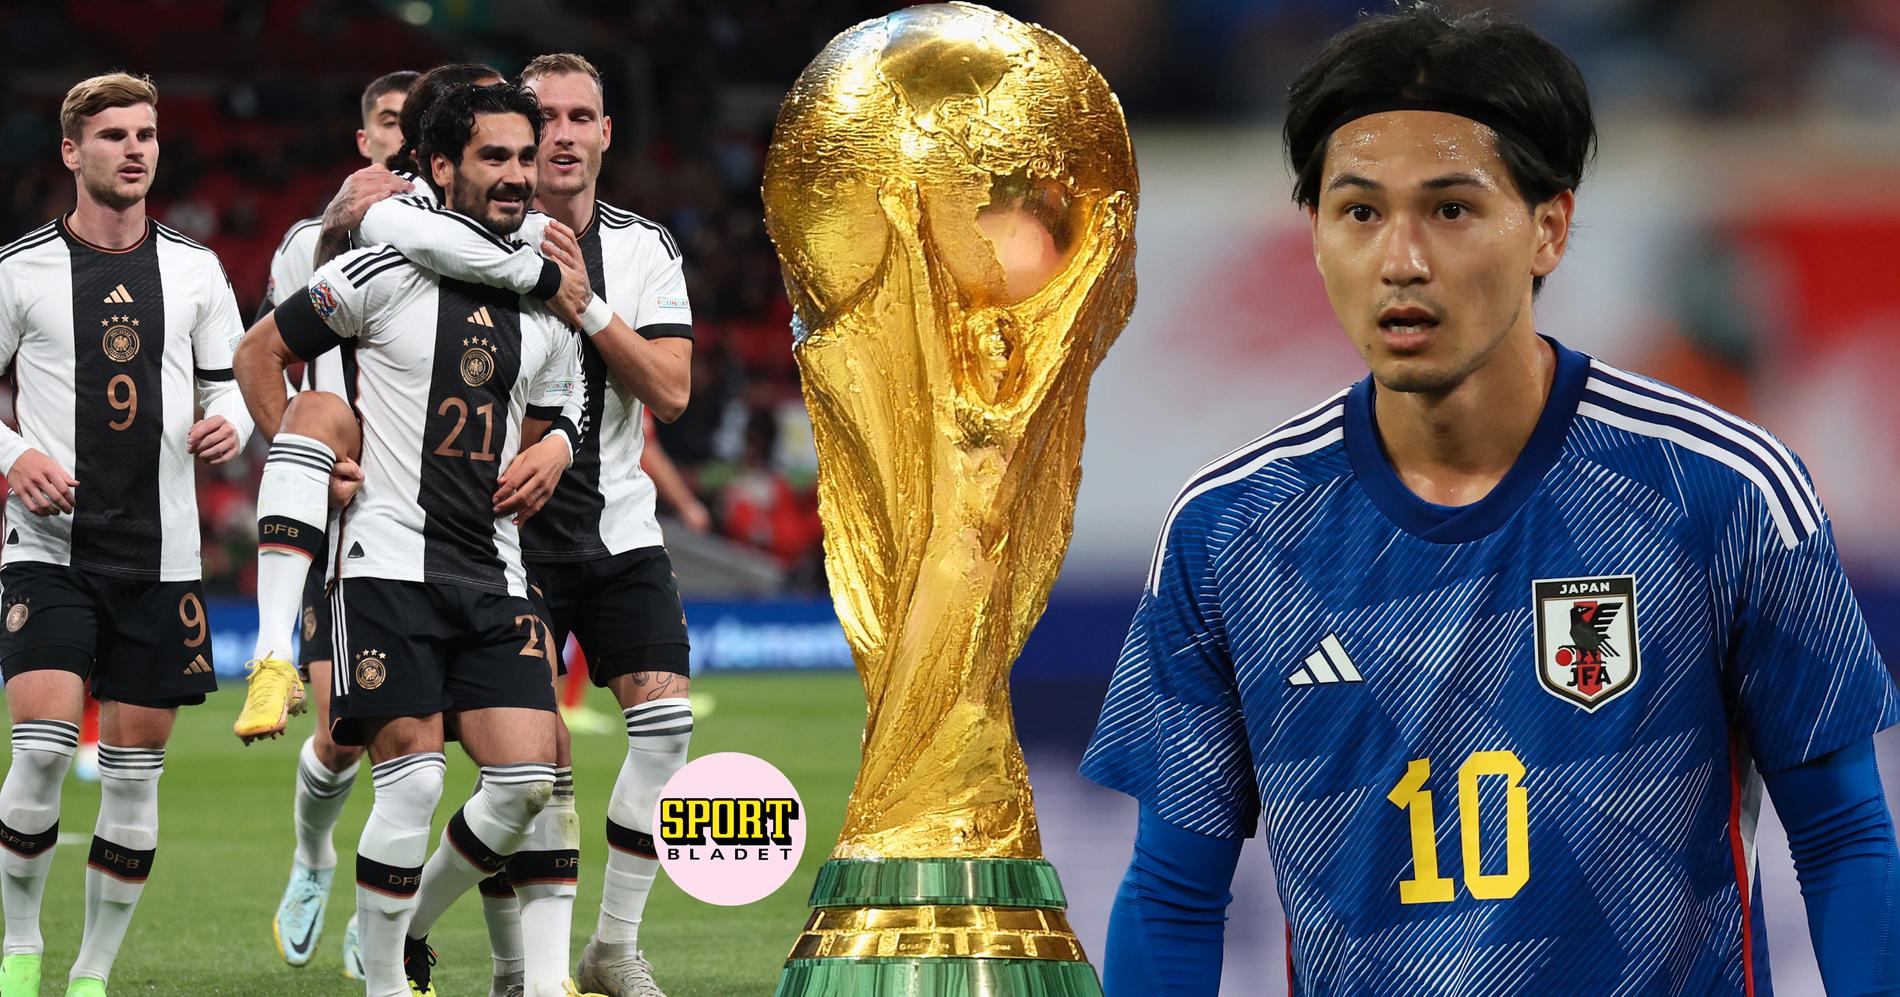 Tyskland möter Japan i fotbolls-VM 2022.